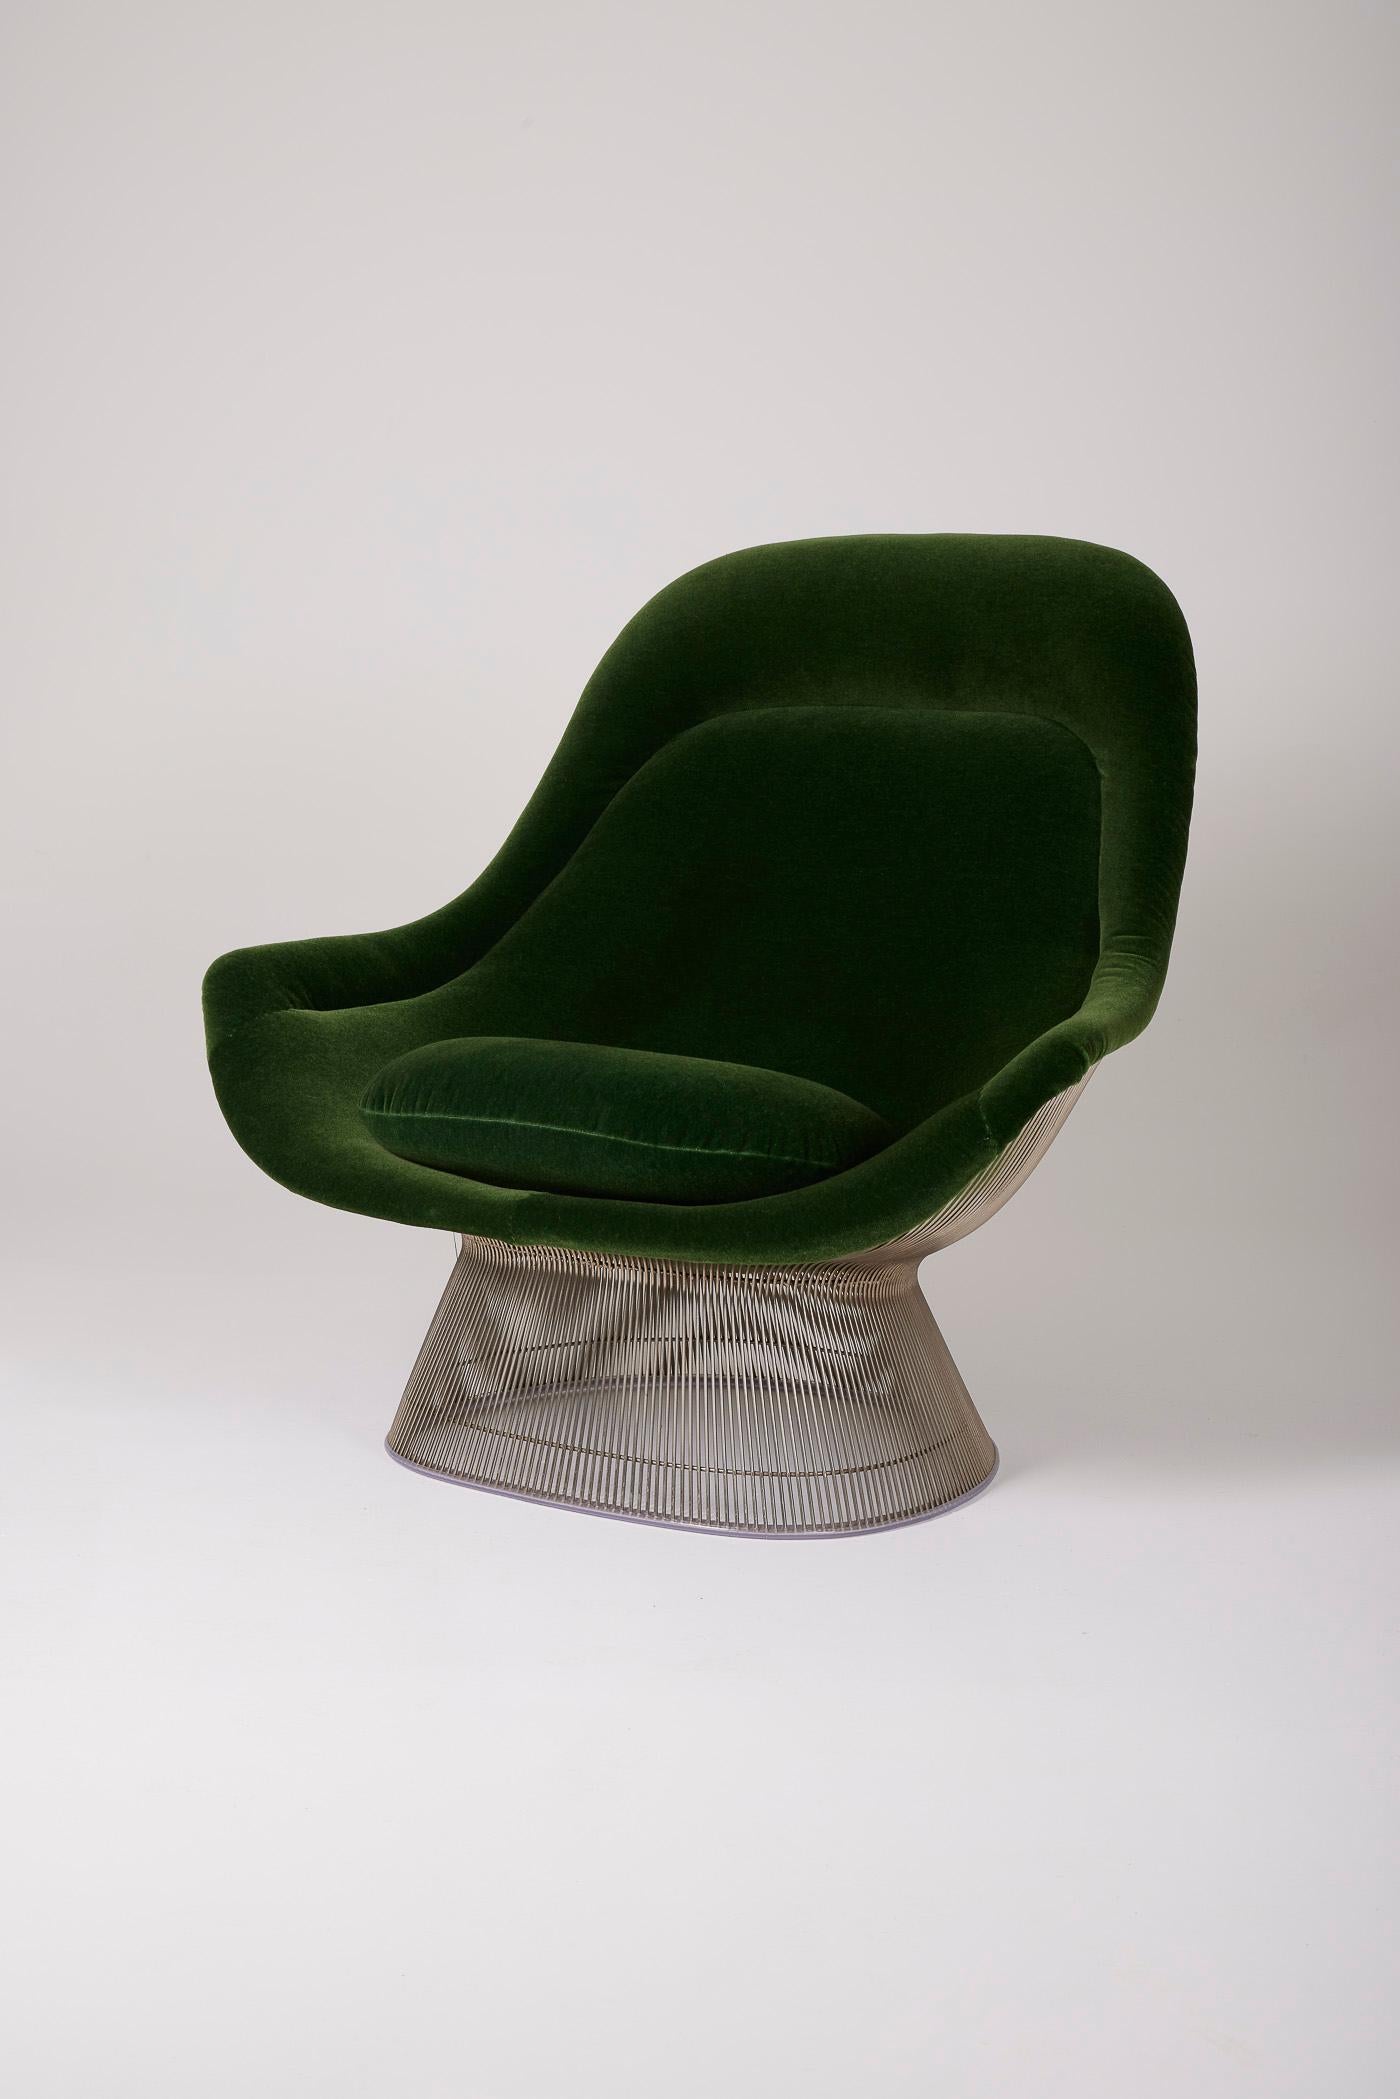 Sessel aus verchromtem Metall des Designers Warren Platner (1919-2006), der in den 1970er Jahren von Knoll hergestellt wurde. Sitz und Rückenlehne sind aus grünem Samt, die Struktur und das Gestell sind aus verchromtem Metall. Der Platner-Sessel ist